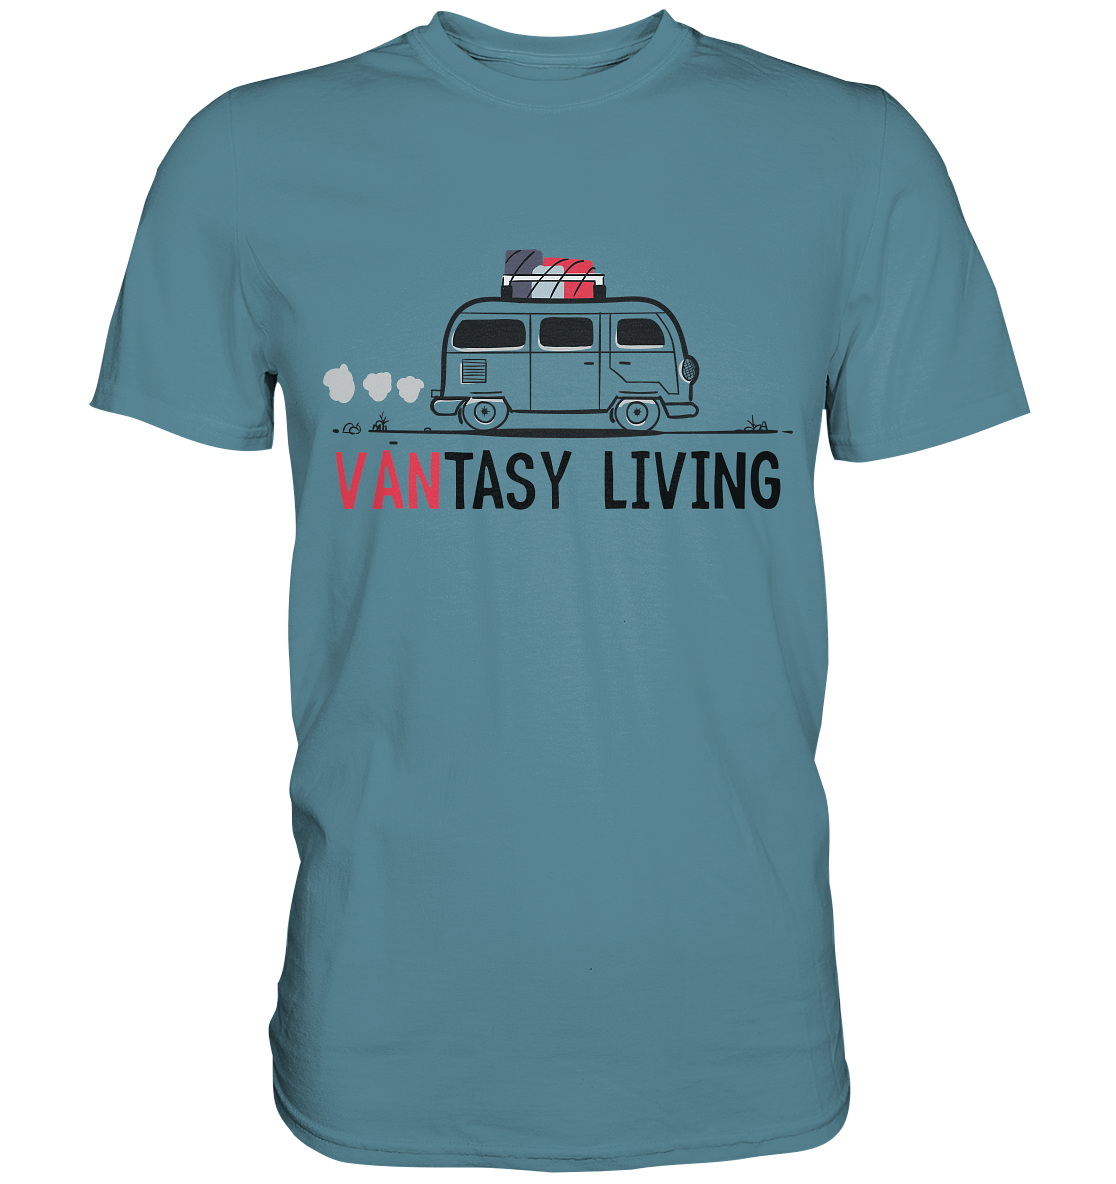 Vantasy Living. Camping -  Premium Shirt